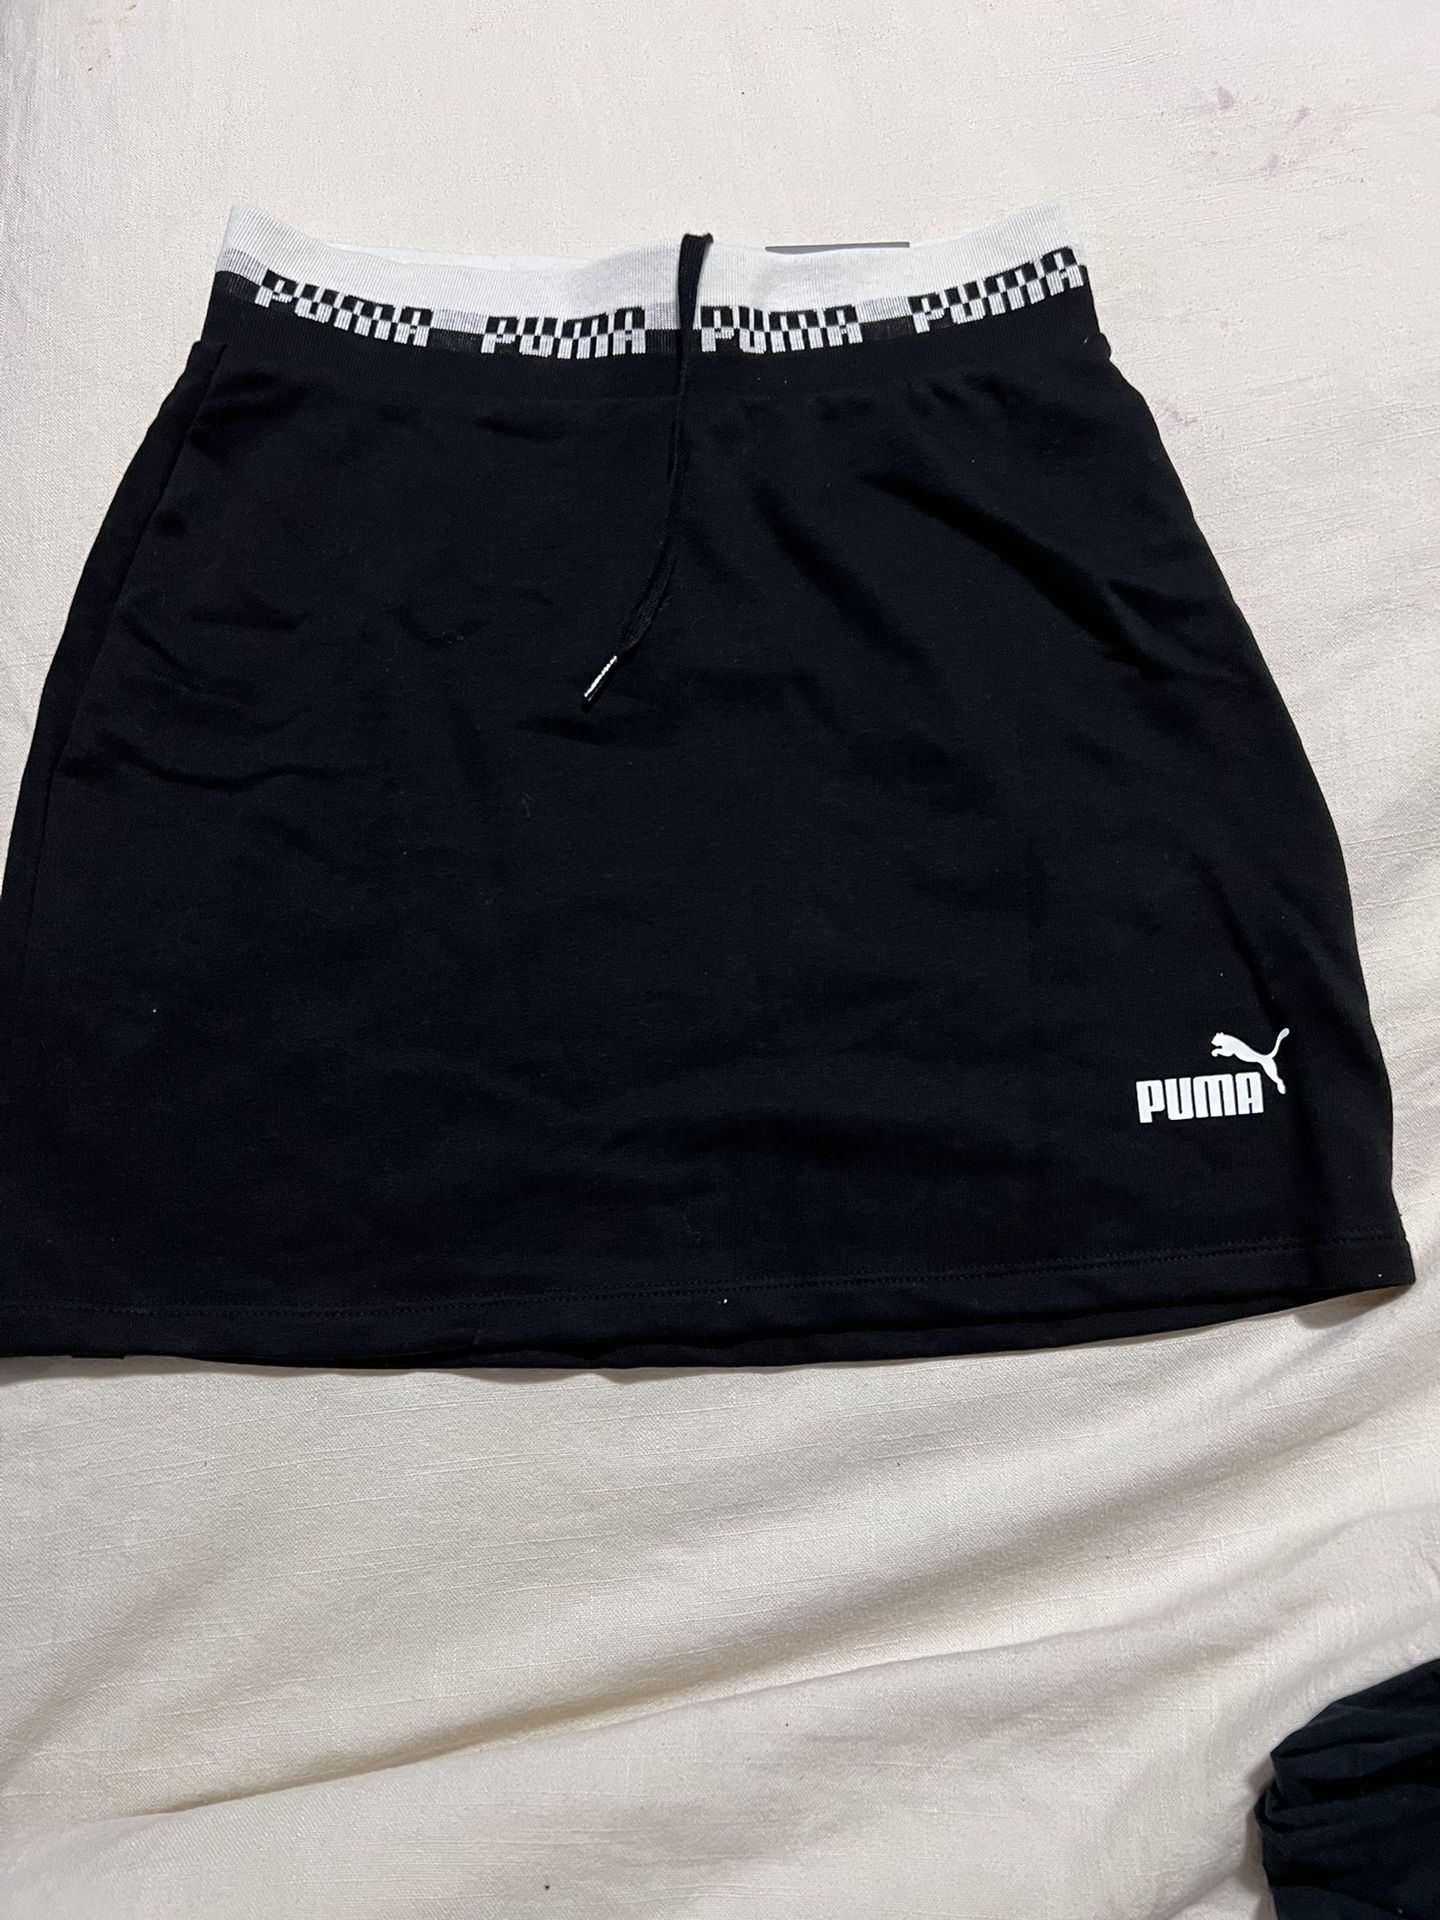 New Black Puma Mini Skirt With Tags